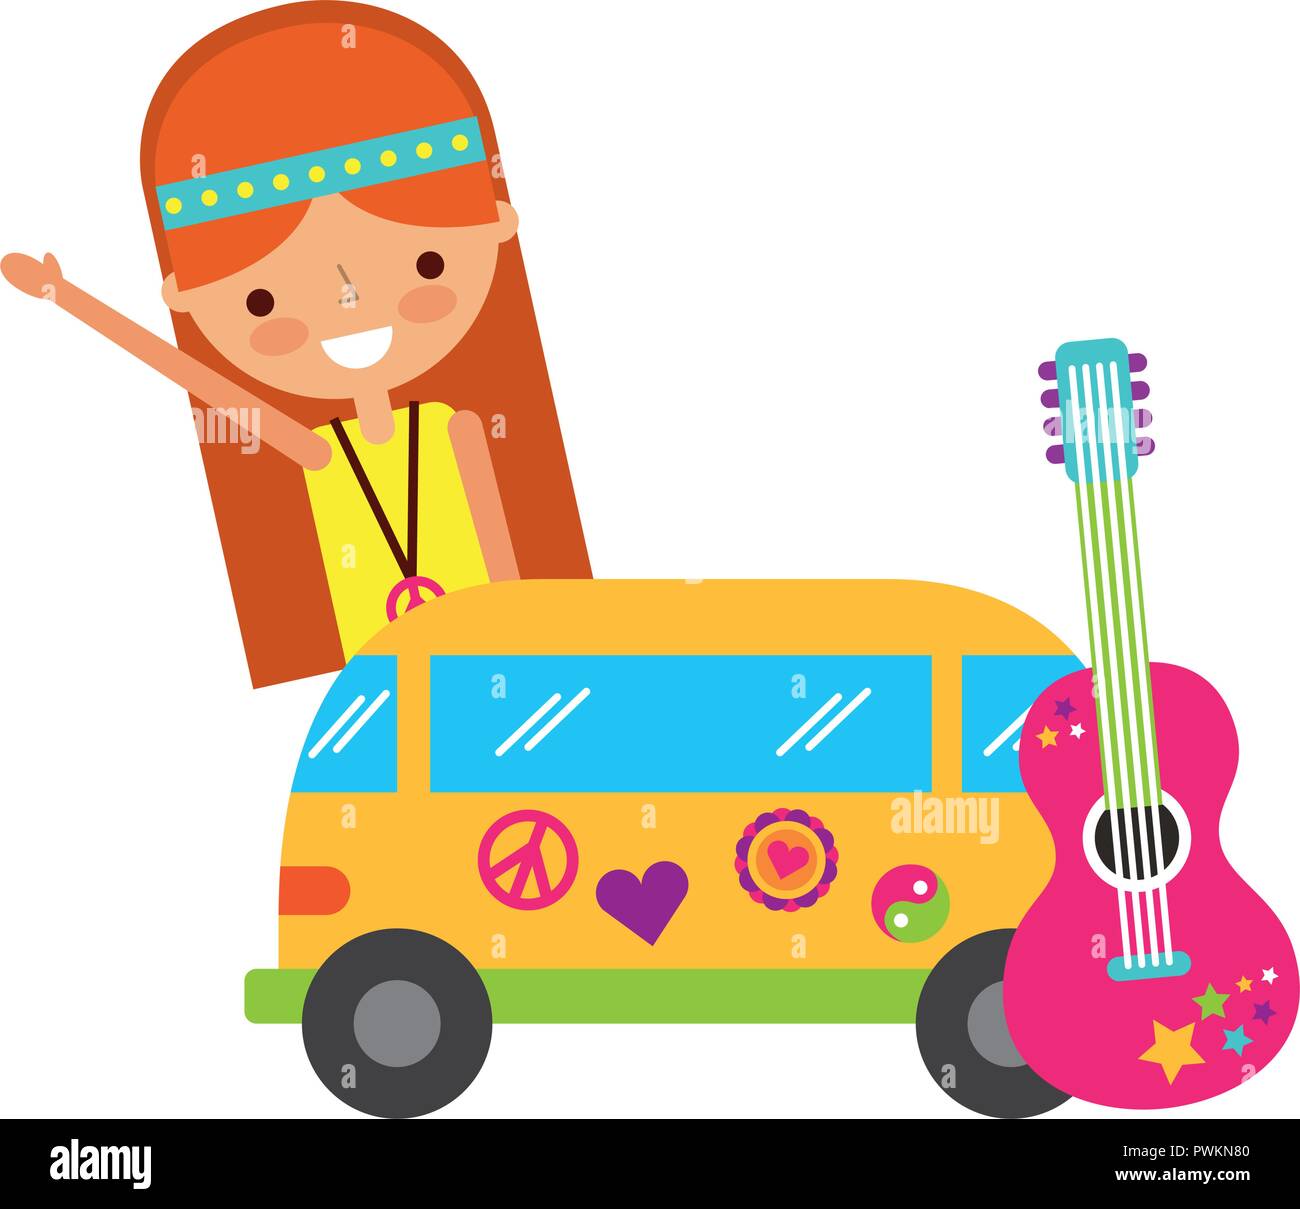 hippie woman cartoon van and guitar vector illustration Stock Vector